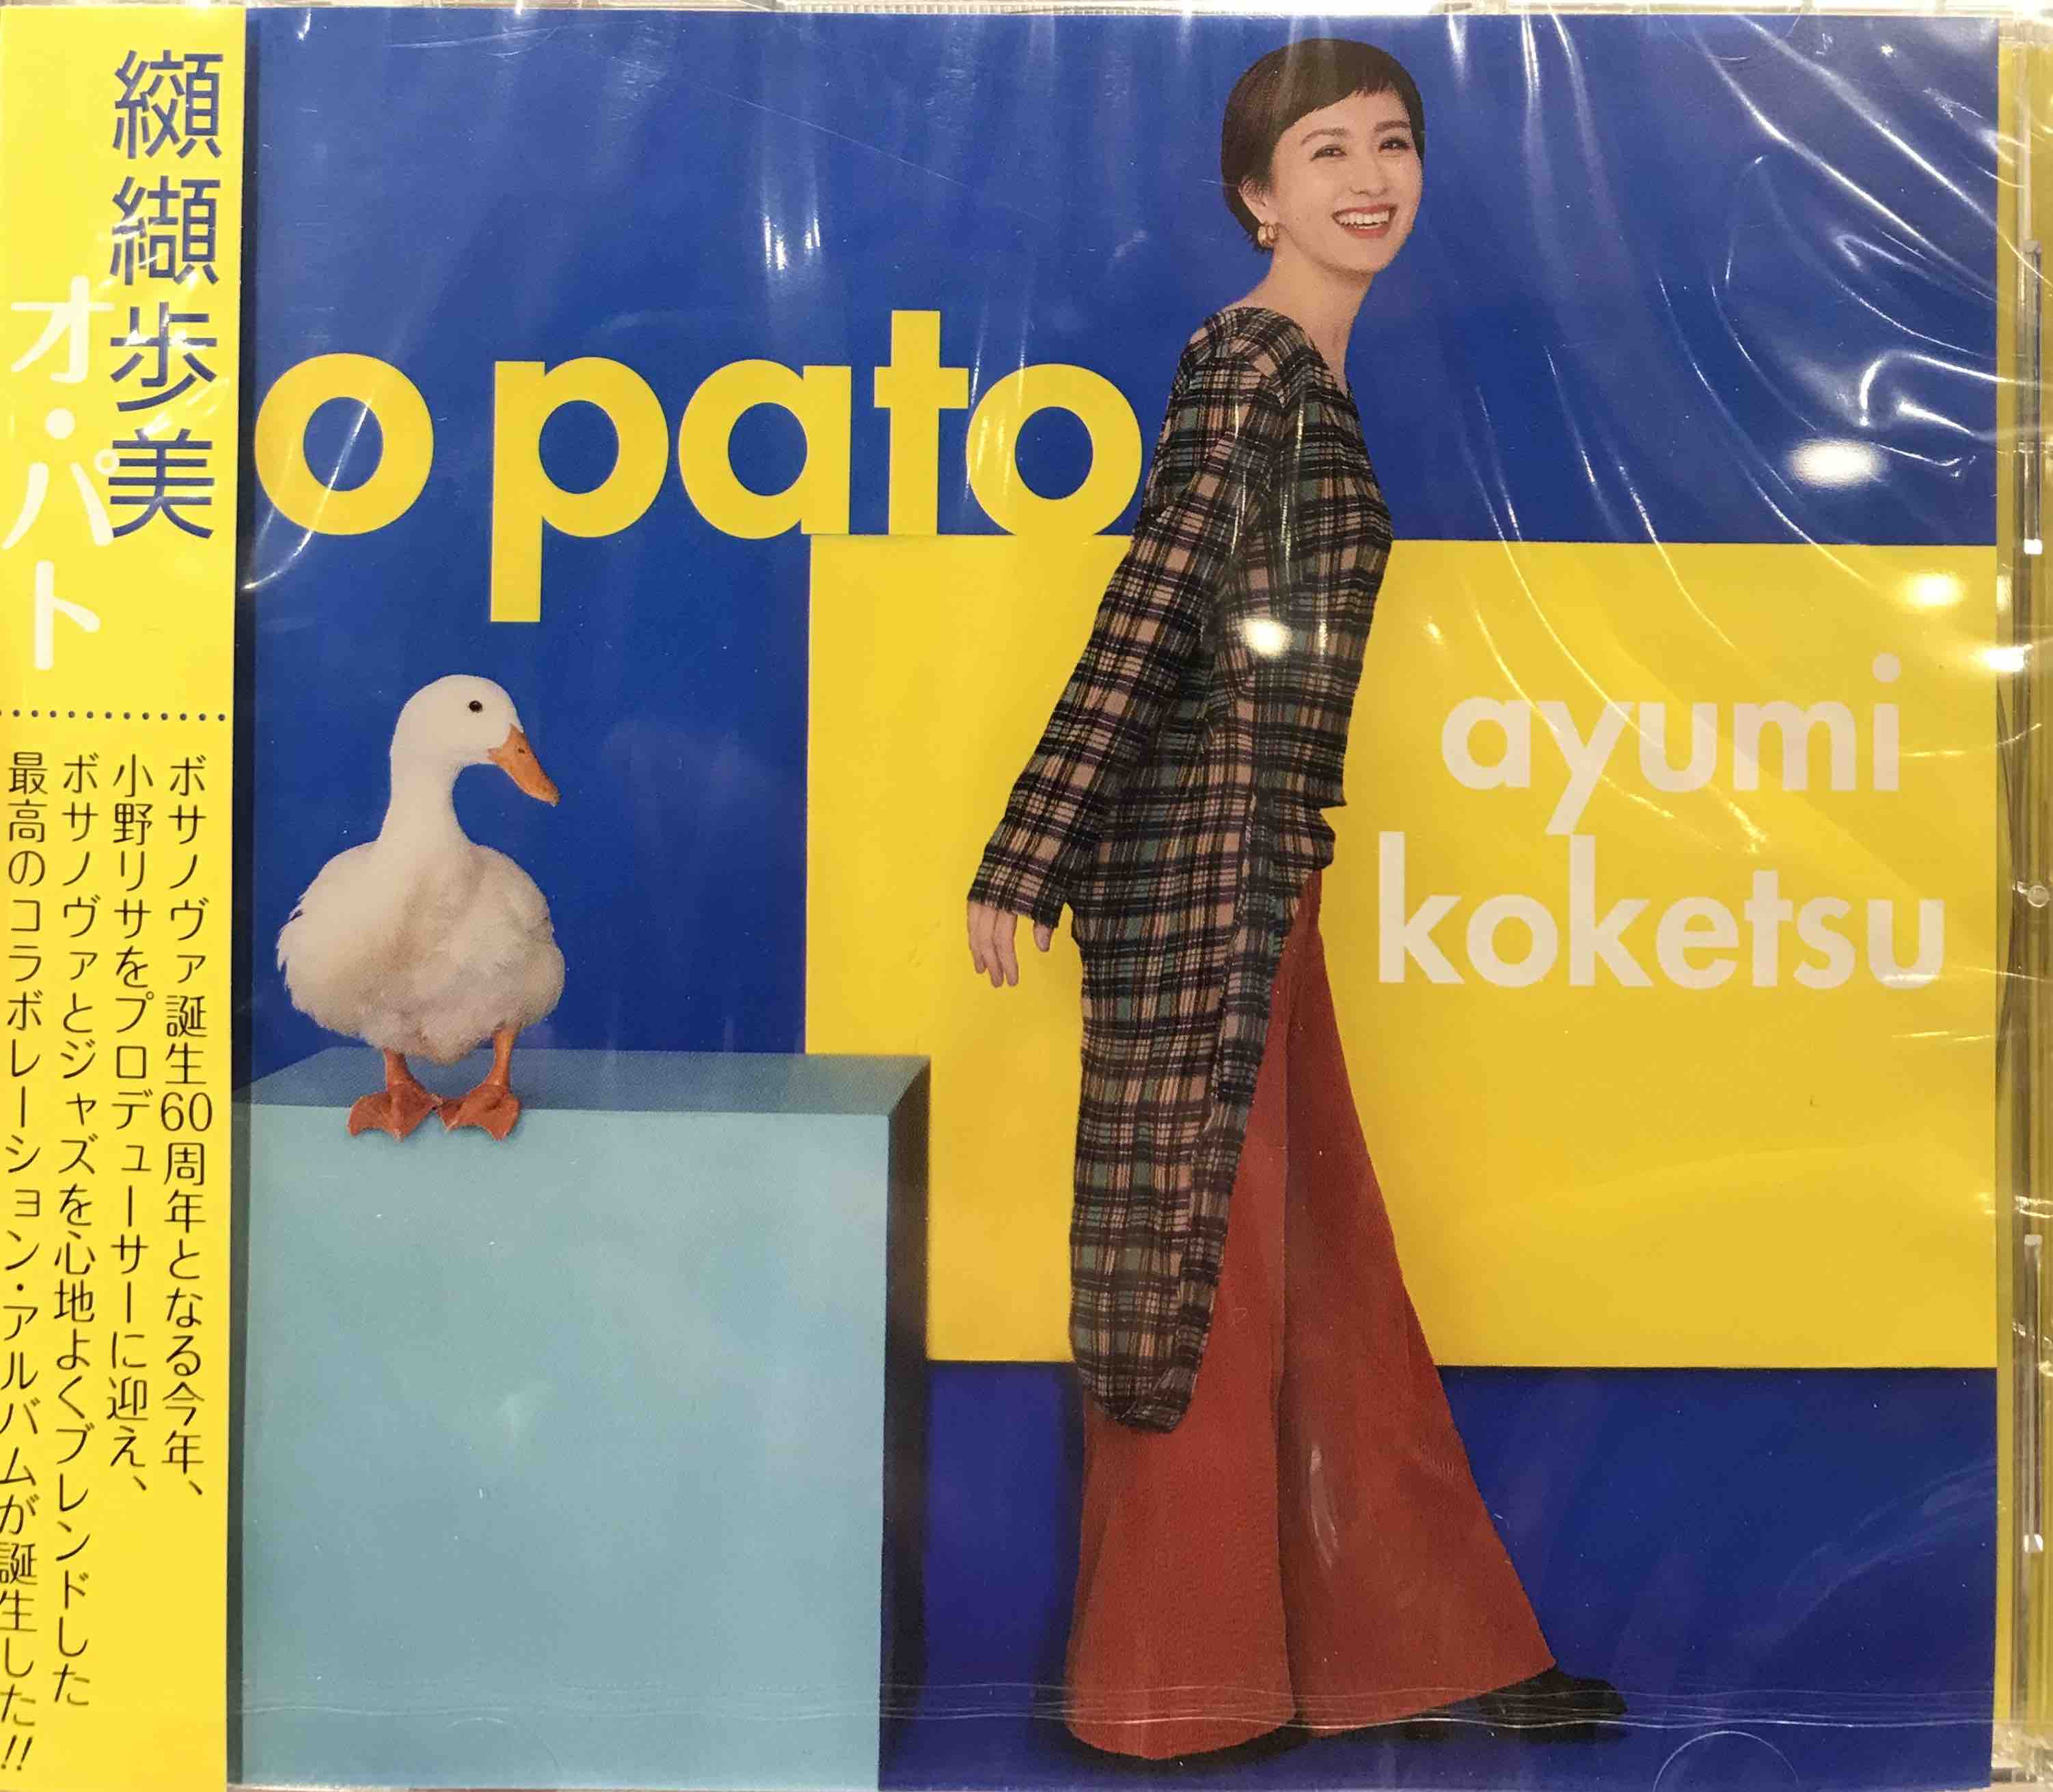 Ayumi Koketsu ‎– O Pato